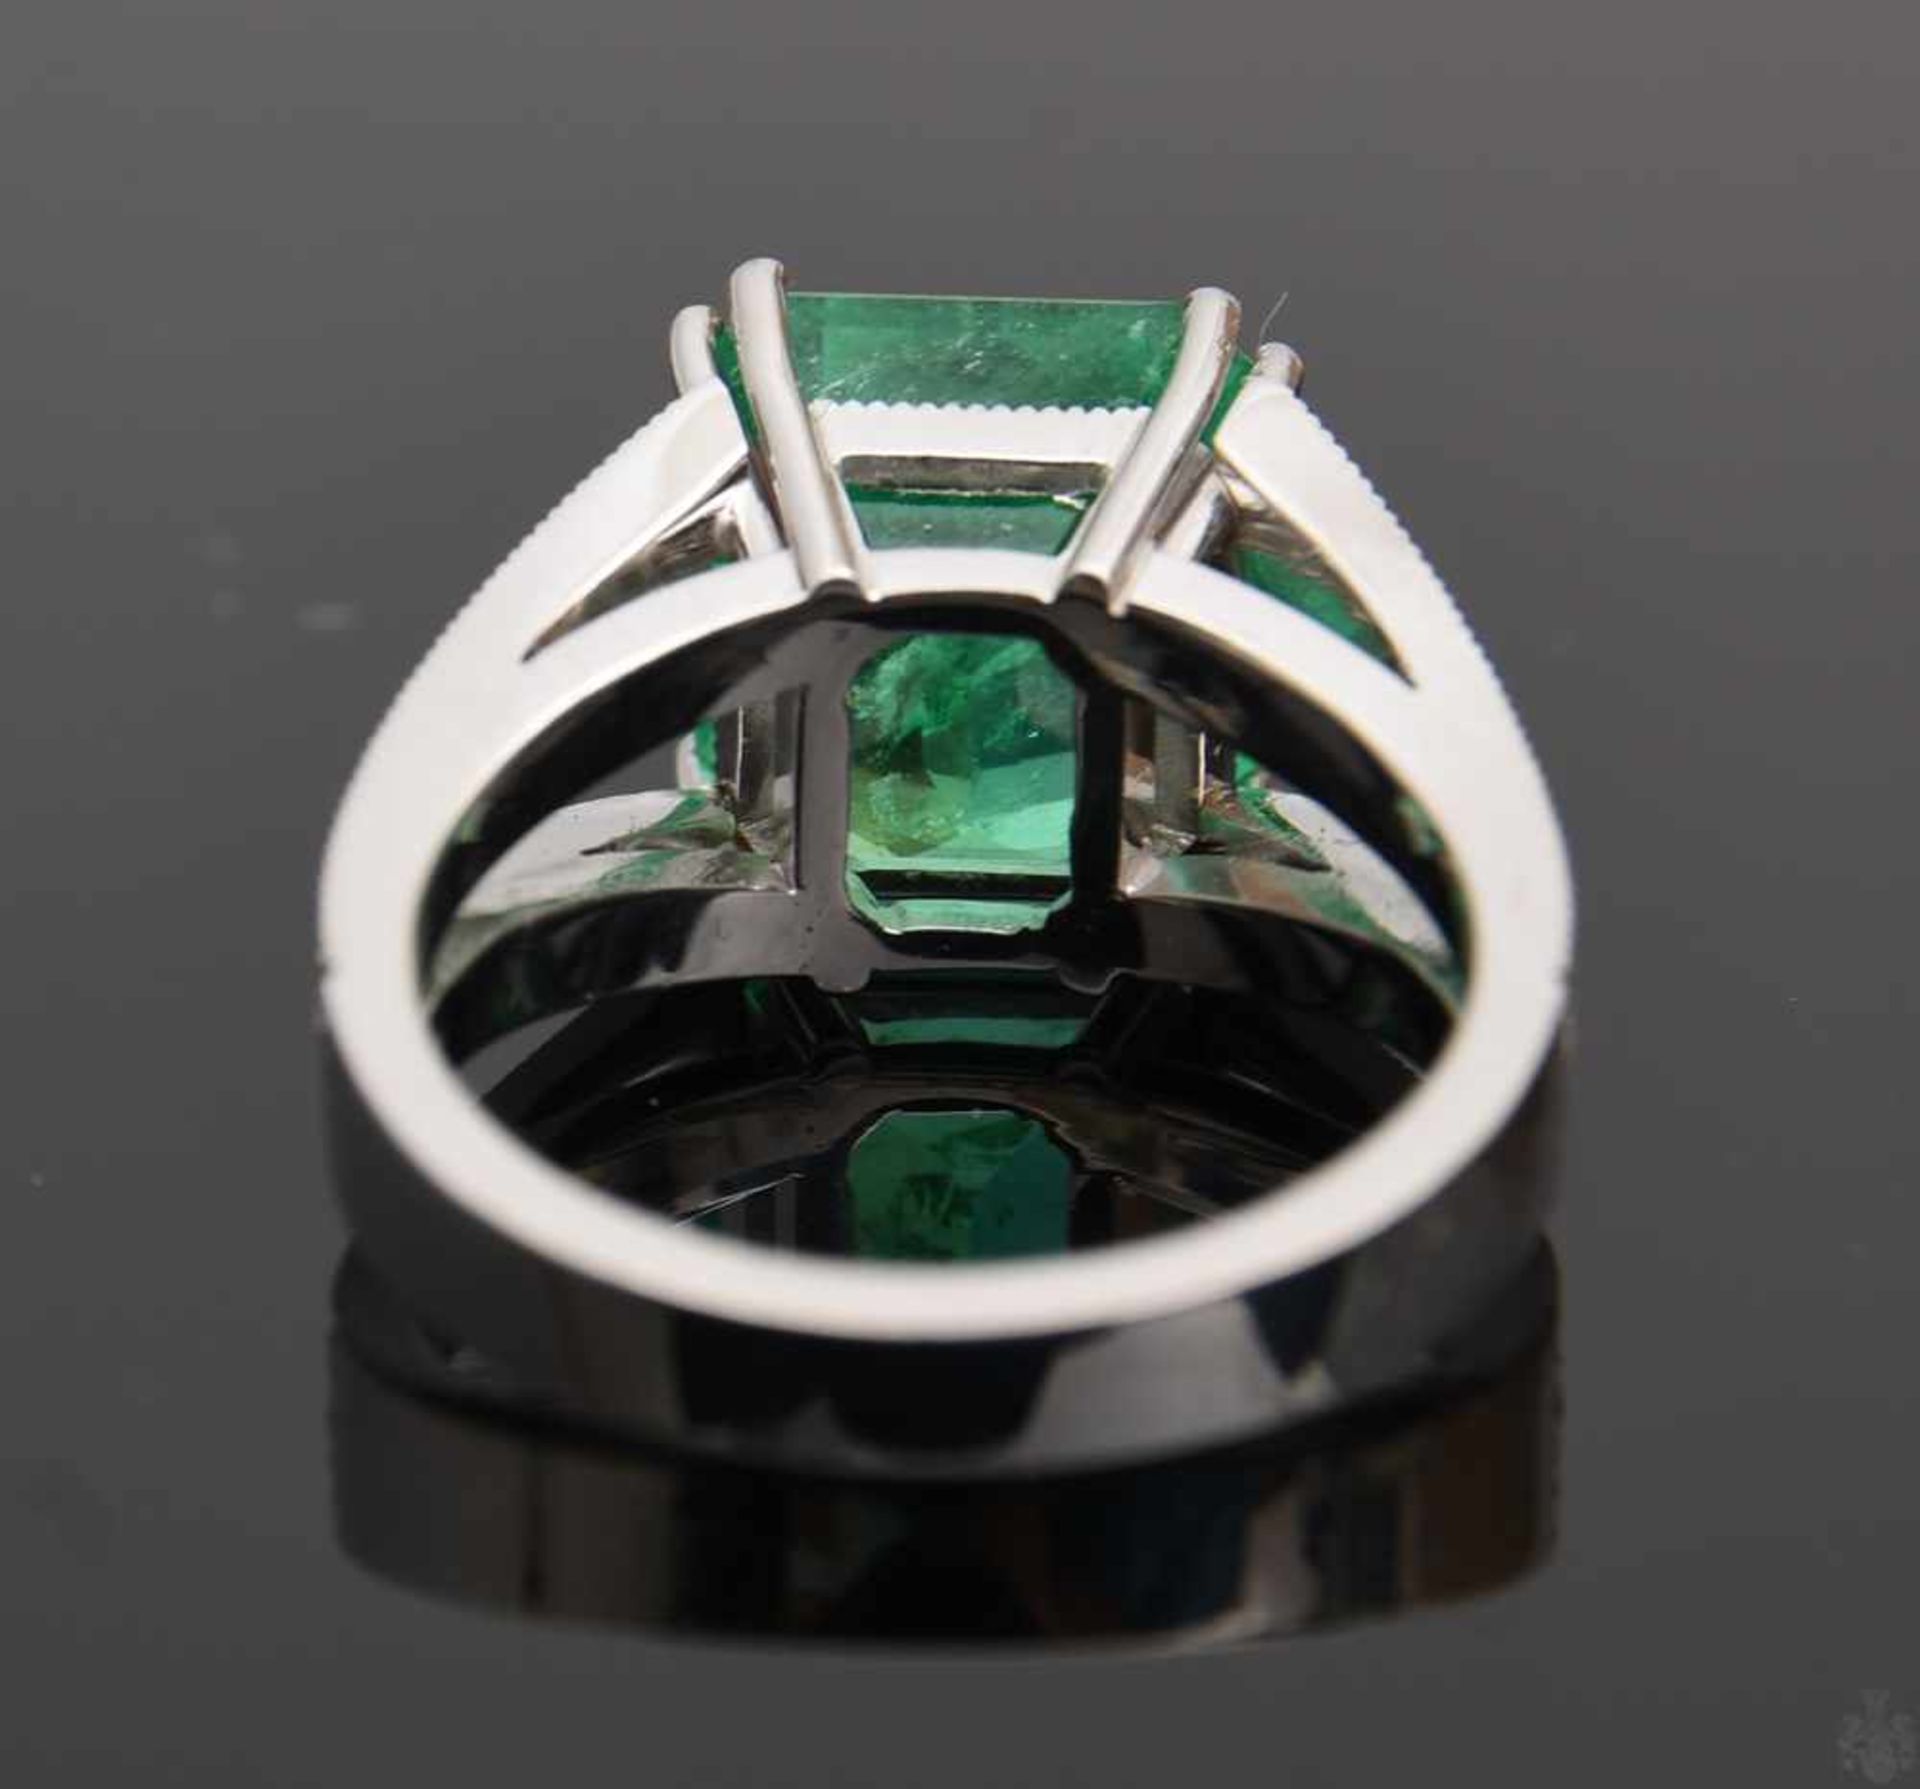 RING MIT SMARAGD UND BRILLIANTEN.Ring mit Smaragd und Brillianten, WG 750/000. 36 Brillianten zus. - Bild 6 aus 16